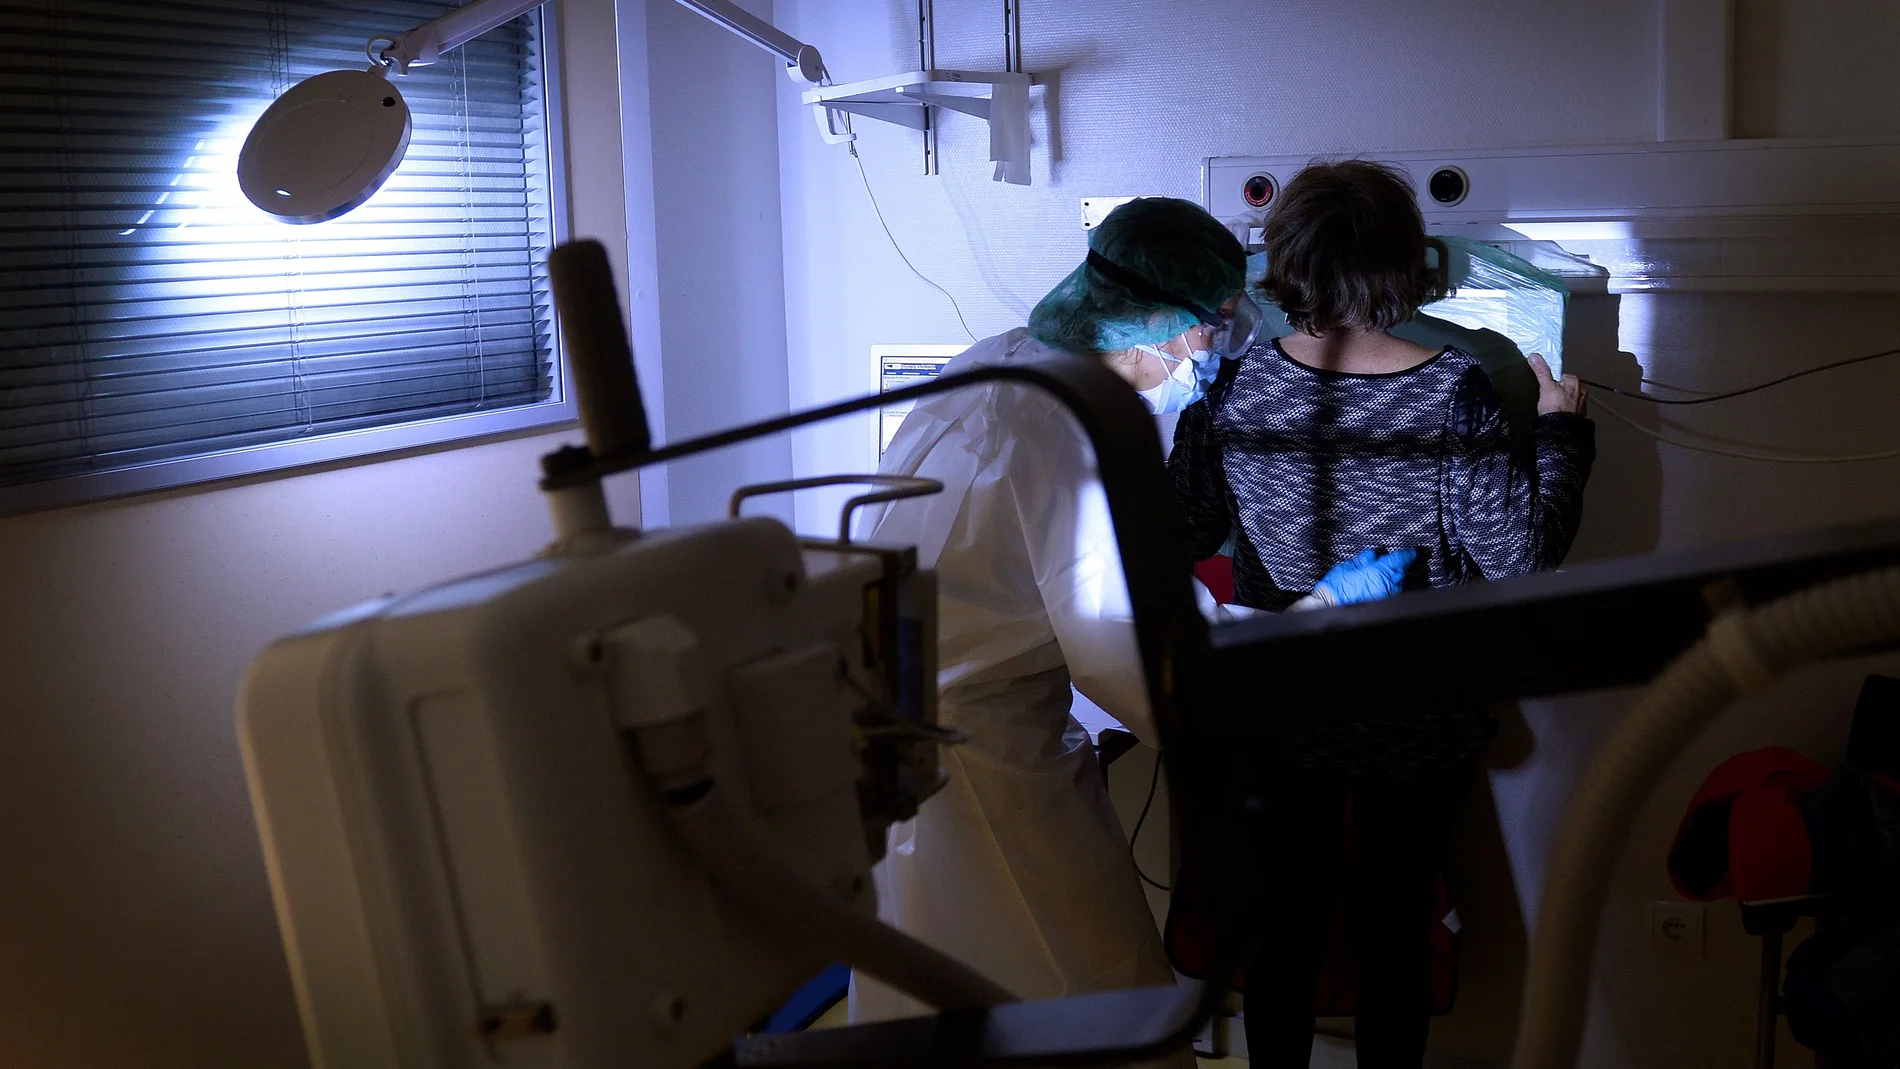 Una técnica de rayos X del Hospital Pío del Rio Hortega de Valladolid, realiza una placa a una mujer con síntomas de Covid-19 EFE/NACHO GALLEGO.